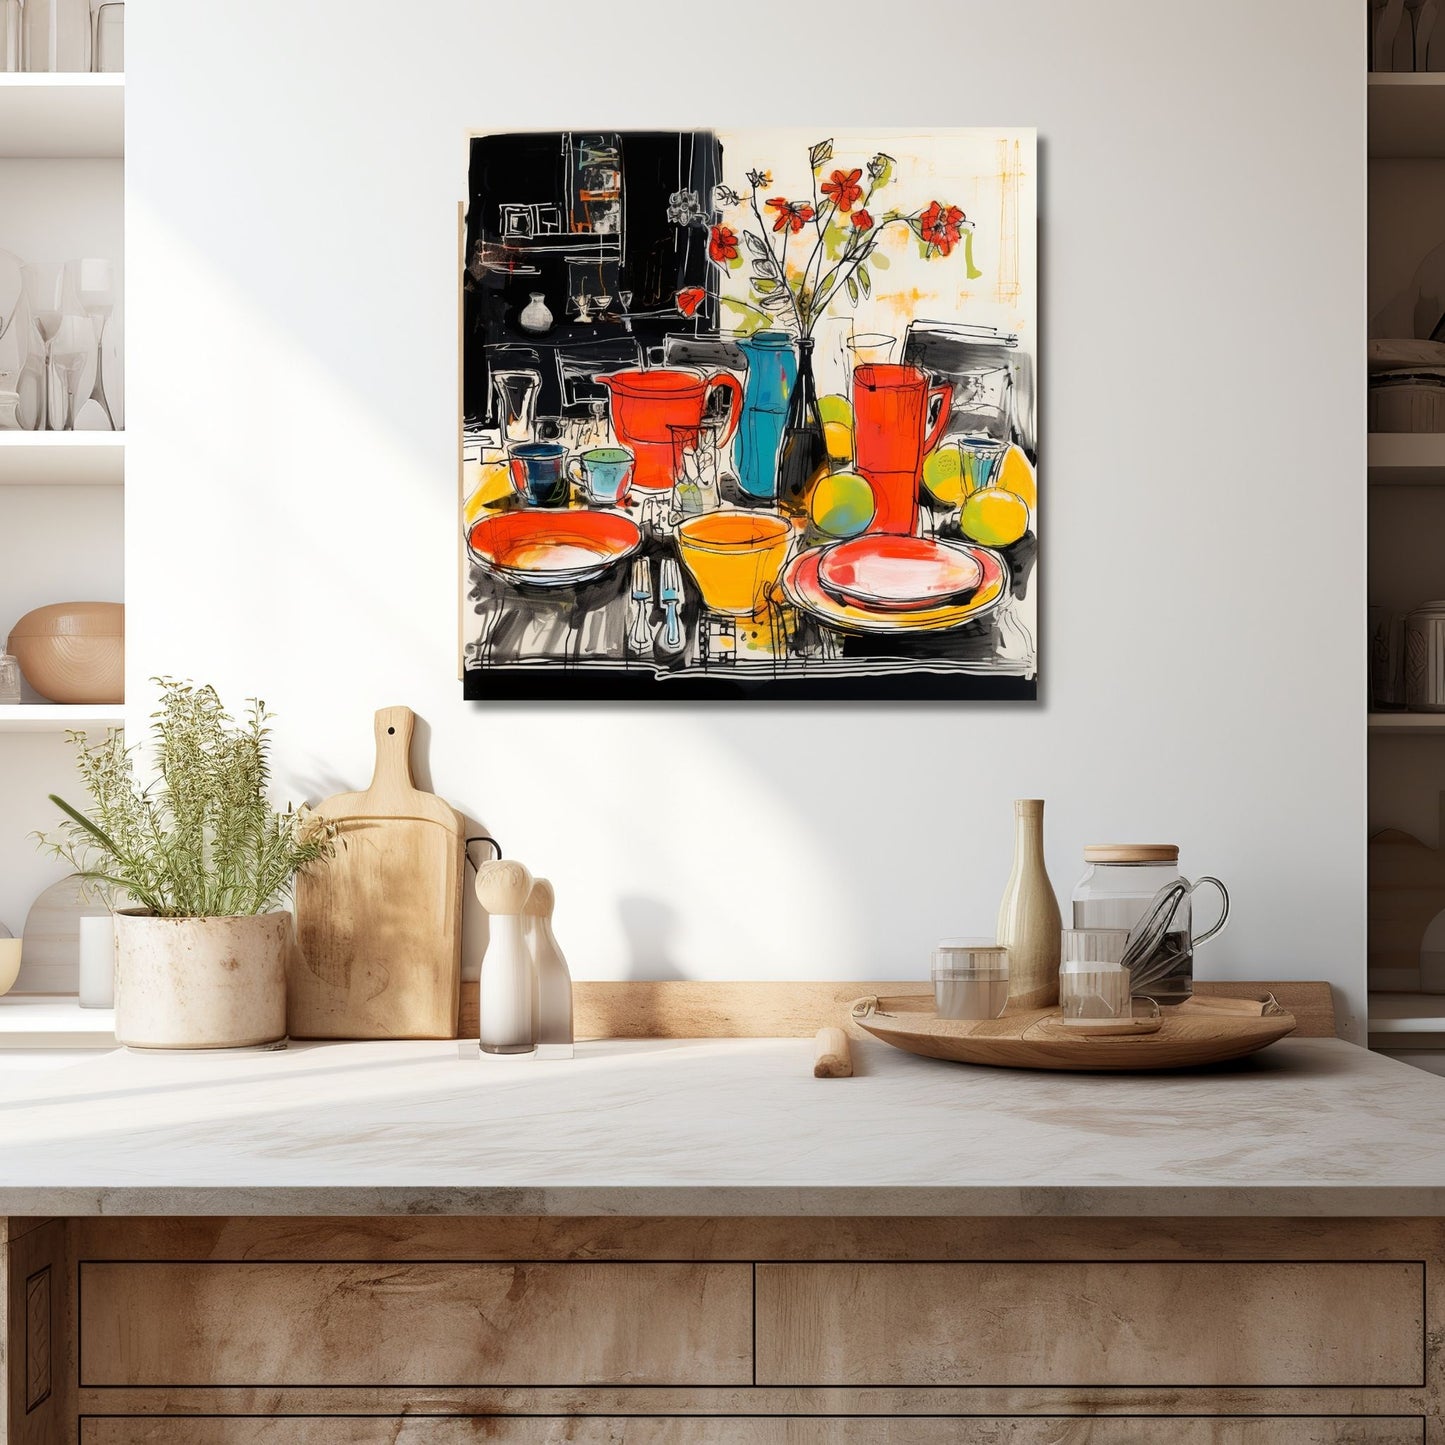 Drawn Kitchen Art plakat og lerret viser et herlig borddekor med kopper, skåler og tallerkener i en levende og fargerik stil. Illustrasjonen viser motivet på lerret som henger over en kjøkkenbenk.